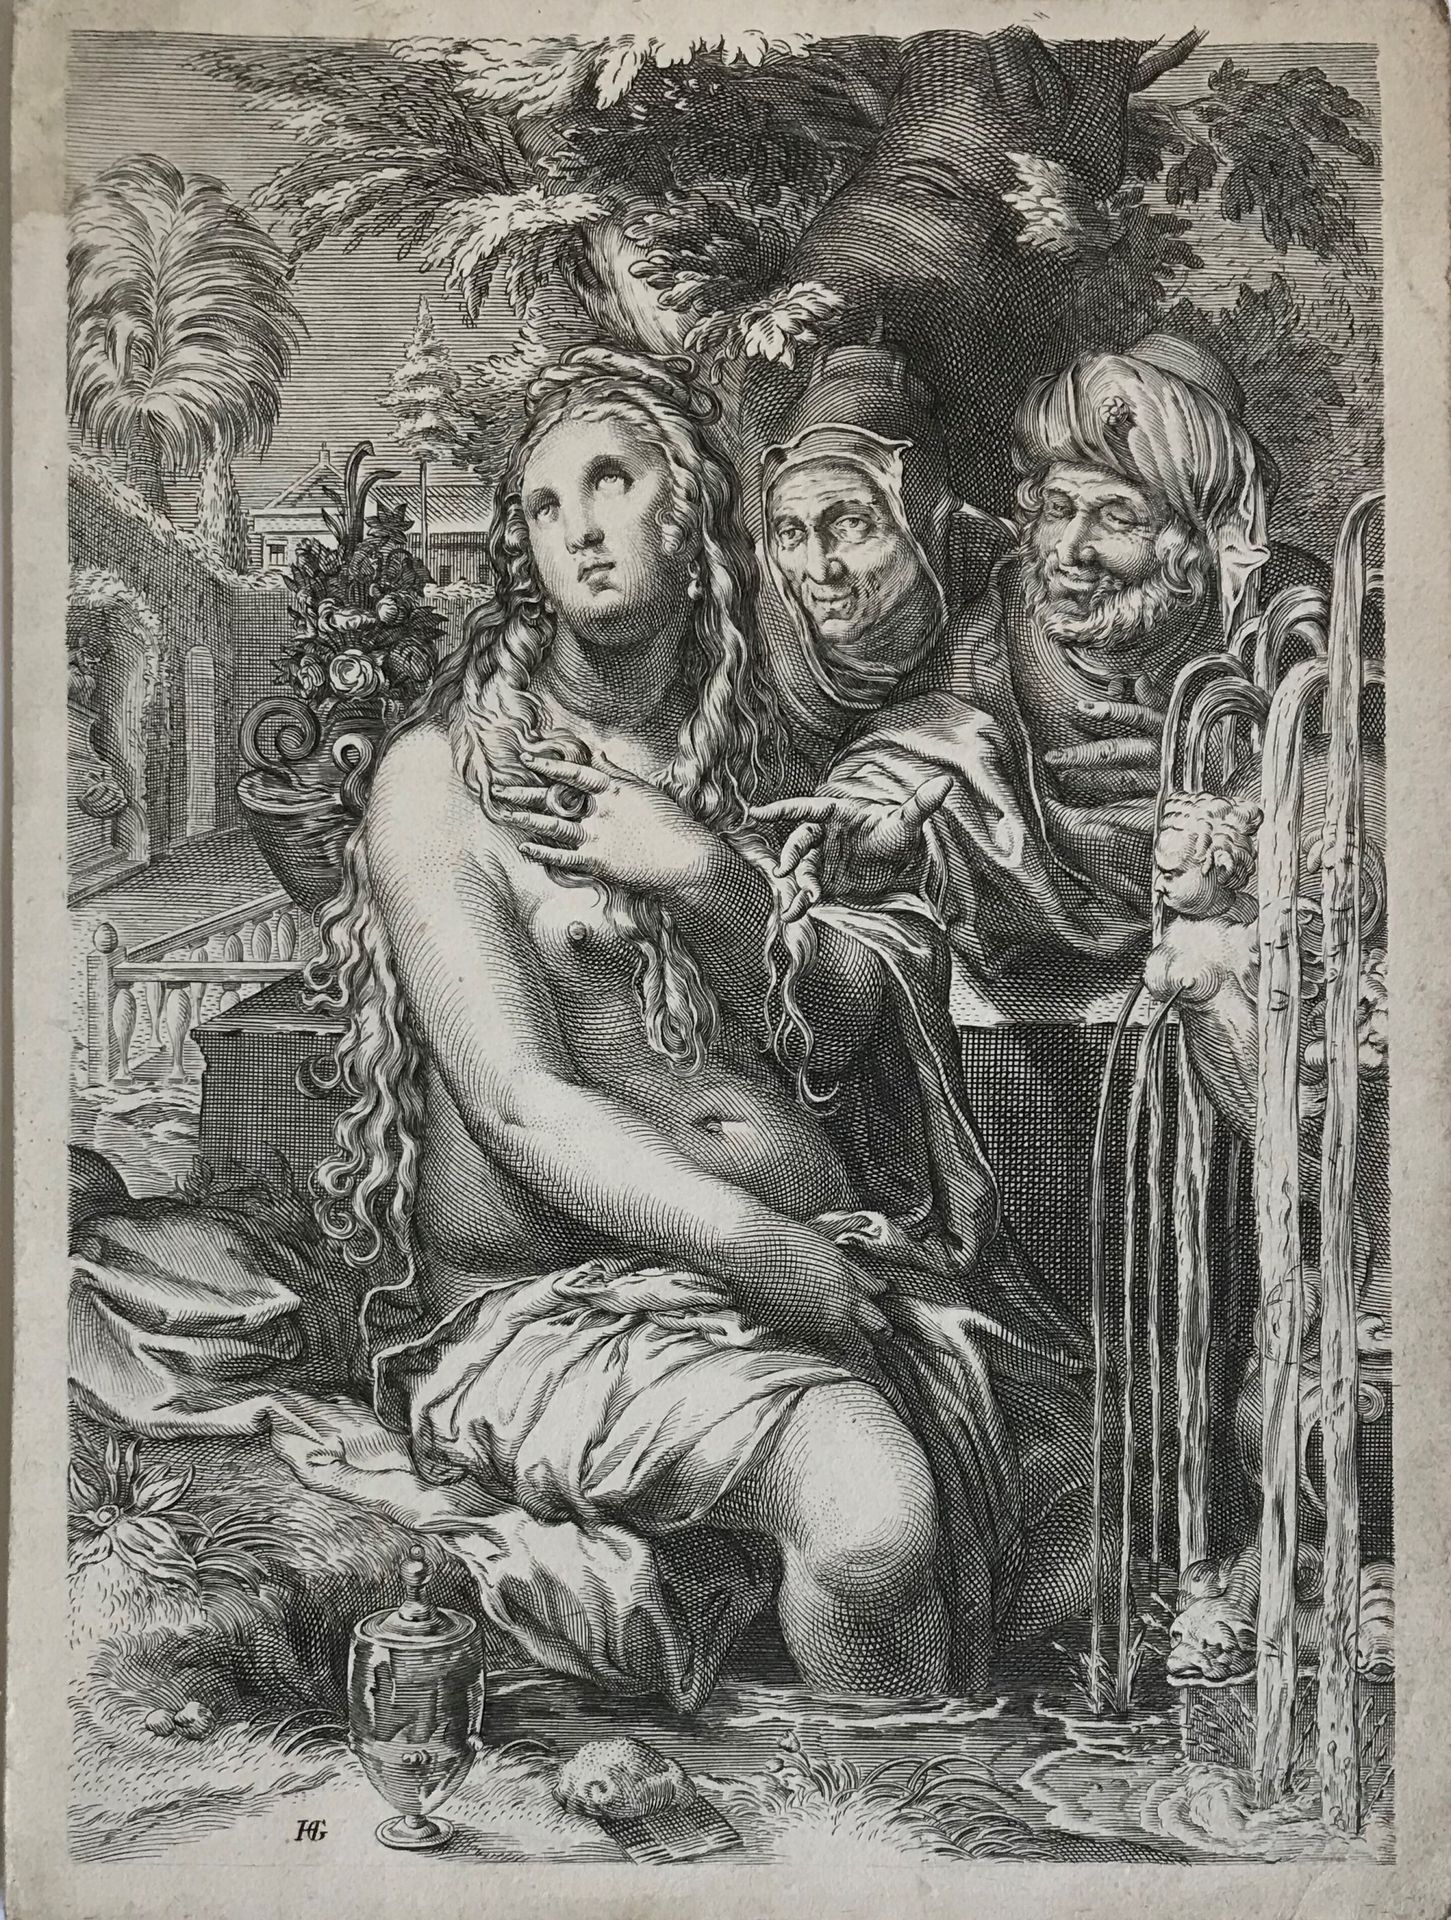 Goltzius 在亨德里克-戈尔茨尤斯（1558-1617）之后

苏珊娜和老男人

黑色雕刻(单张-无边框)

后来的印刷品

24 x 18